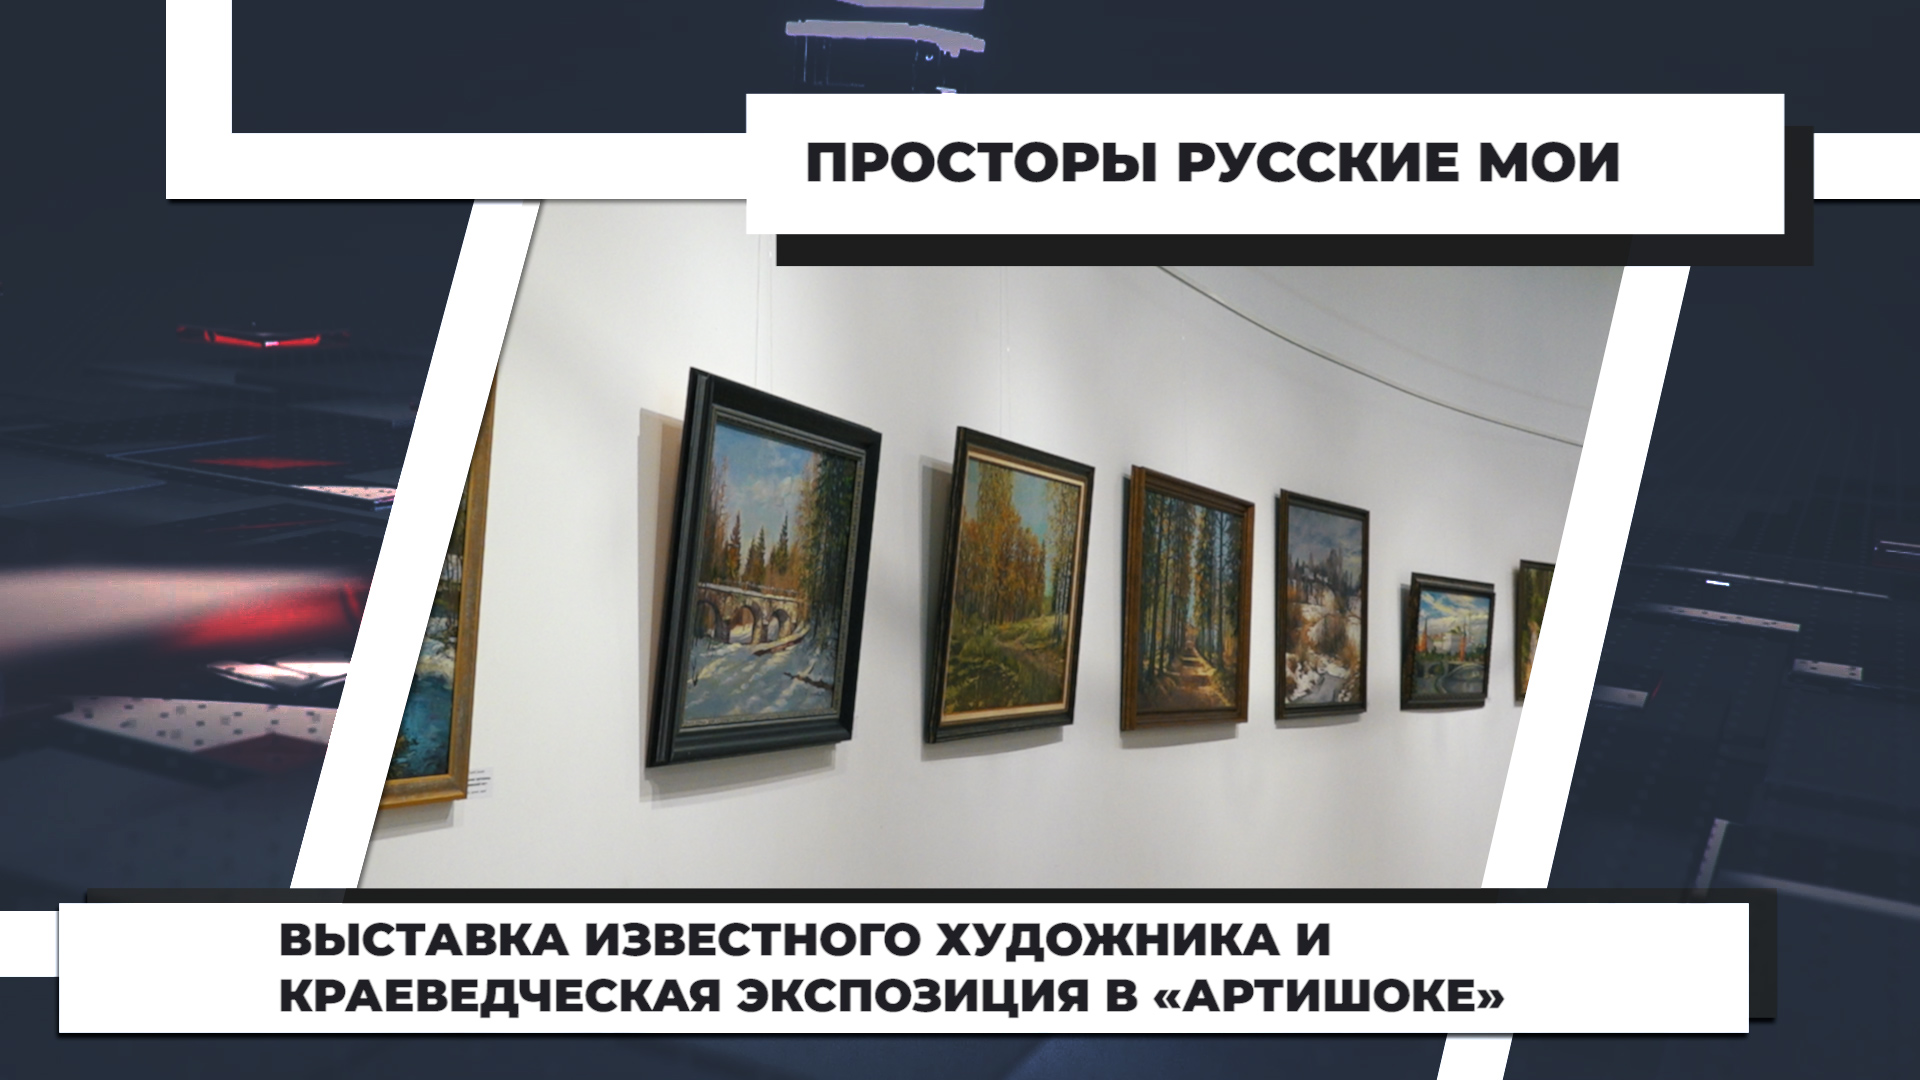 Выставка известного художника и краеведческая экспозиция в «Артишоке». 1.07.2022